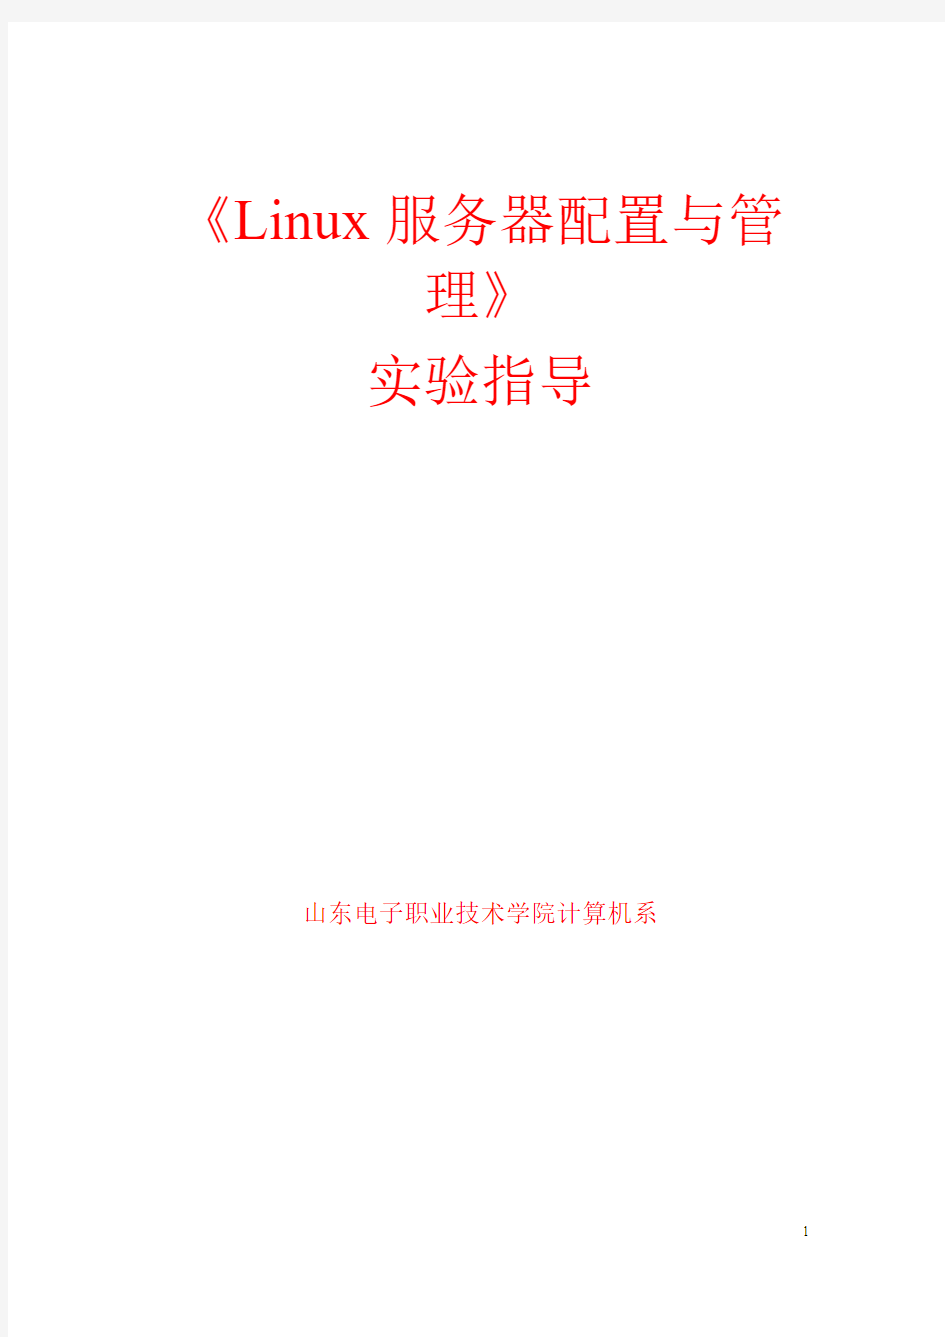 Linux服务器配置与管理